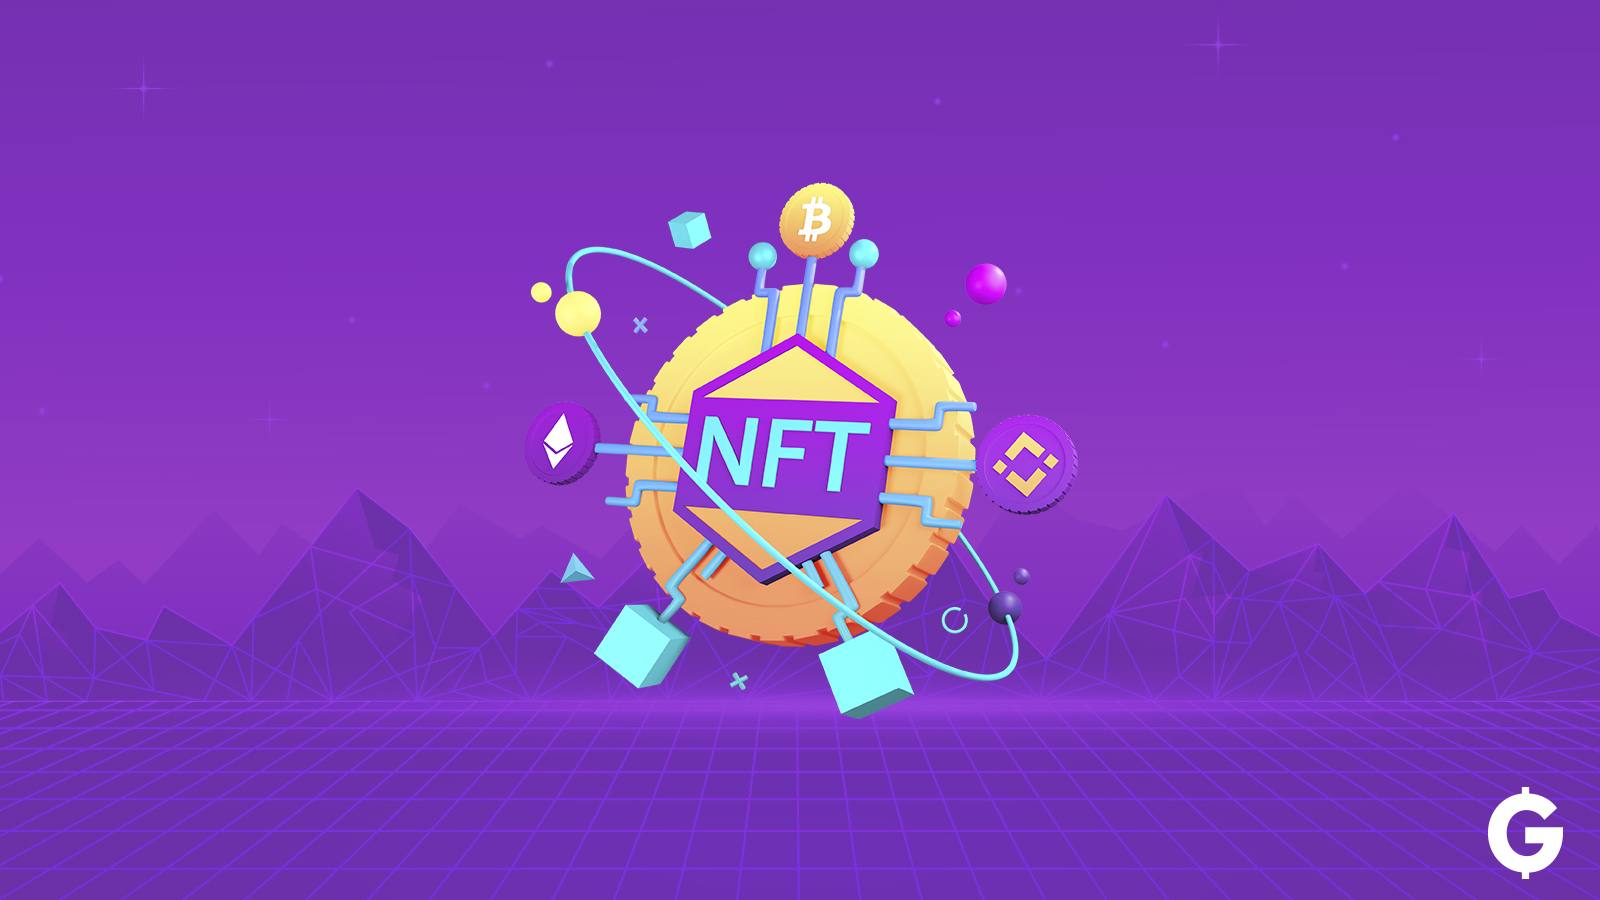 Copertina dell'articolo su come guadagnare con gli NFT. L'immagine rappresenta una moneta con dentro scritto NFT